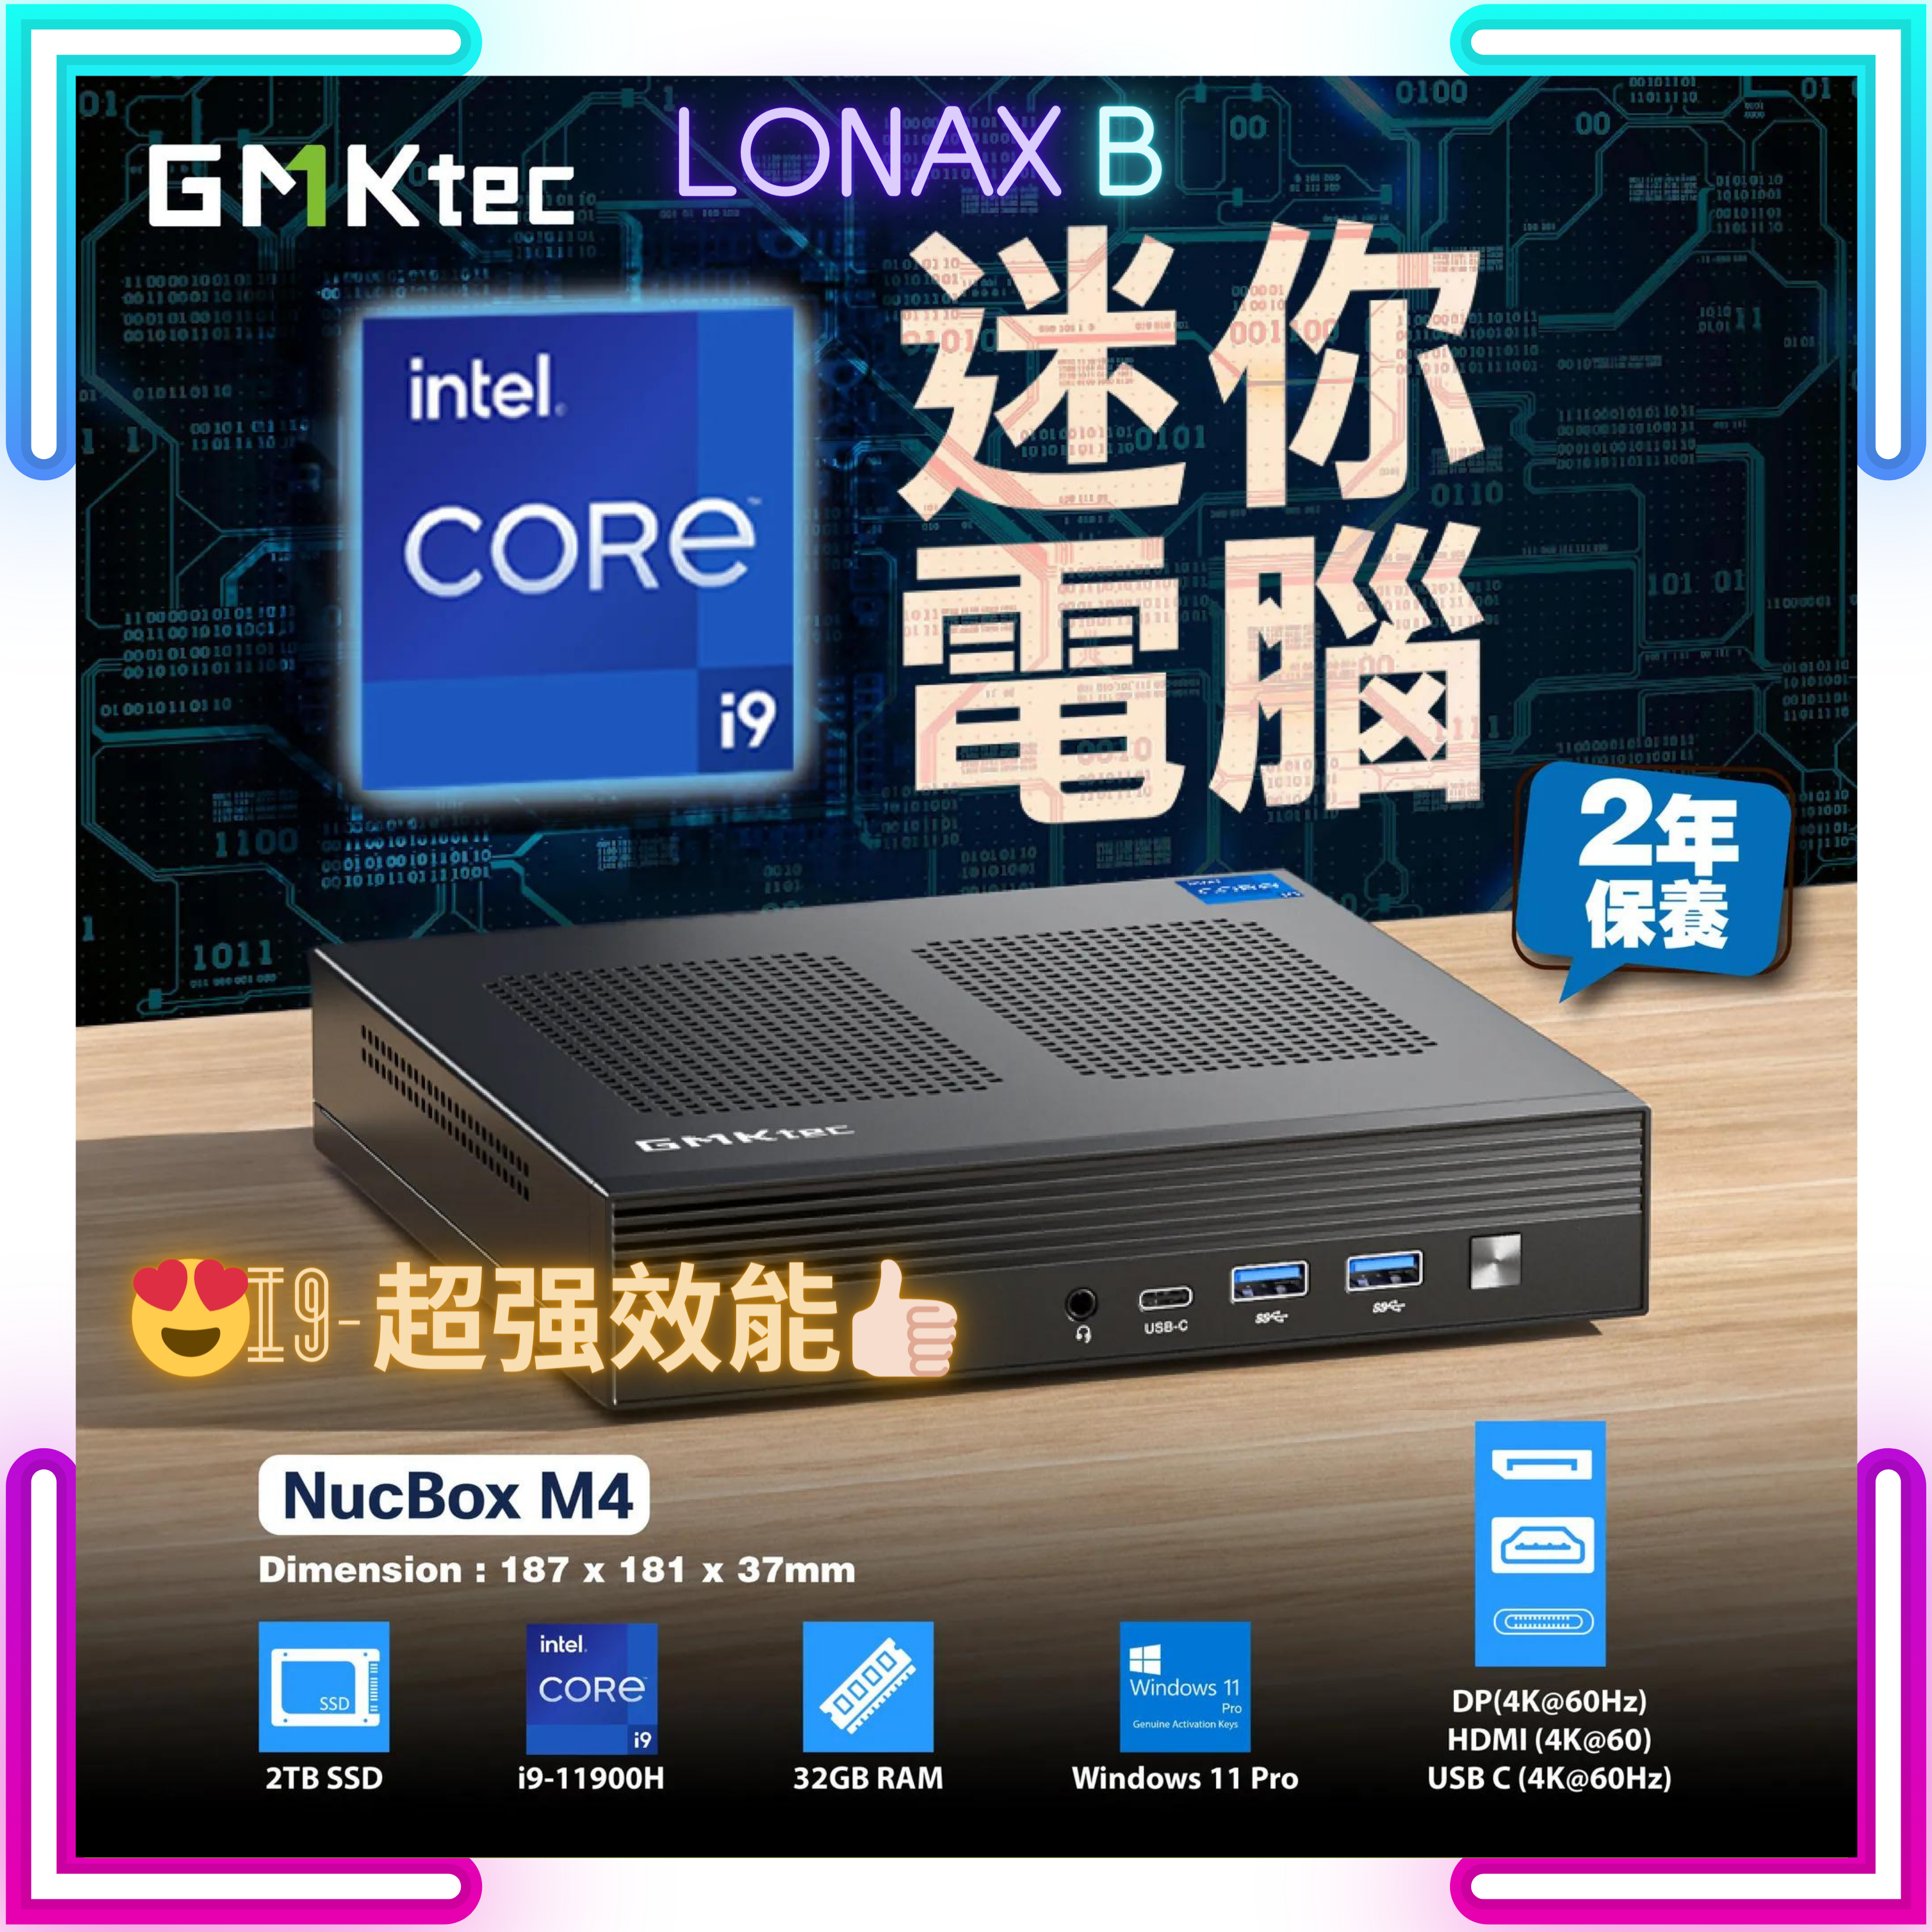 GMKTEC NucBox M4 Mini PC 迷你電腦 (i9-11900H, 32GB+2TB SSD)